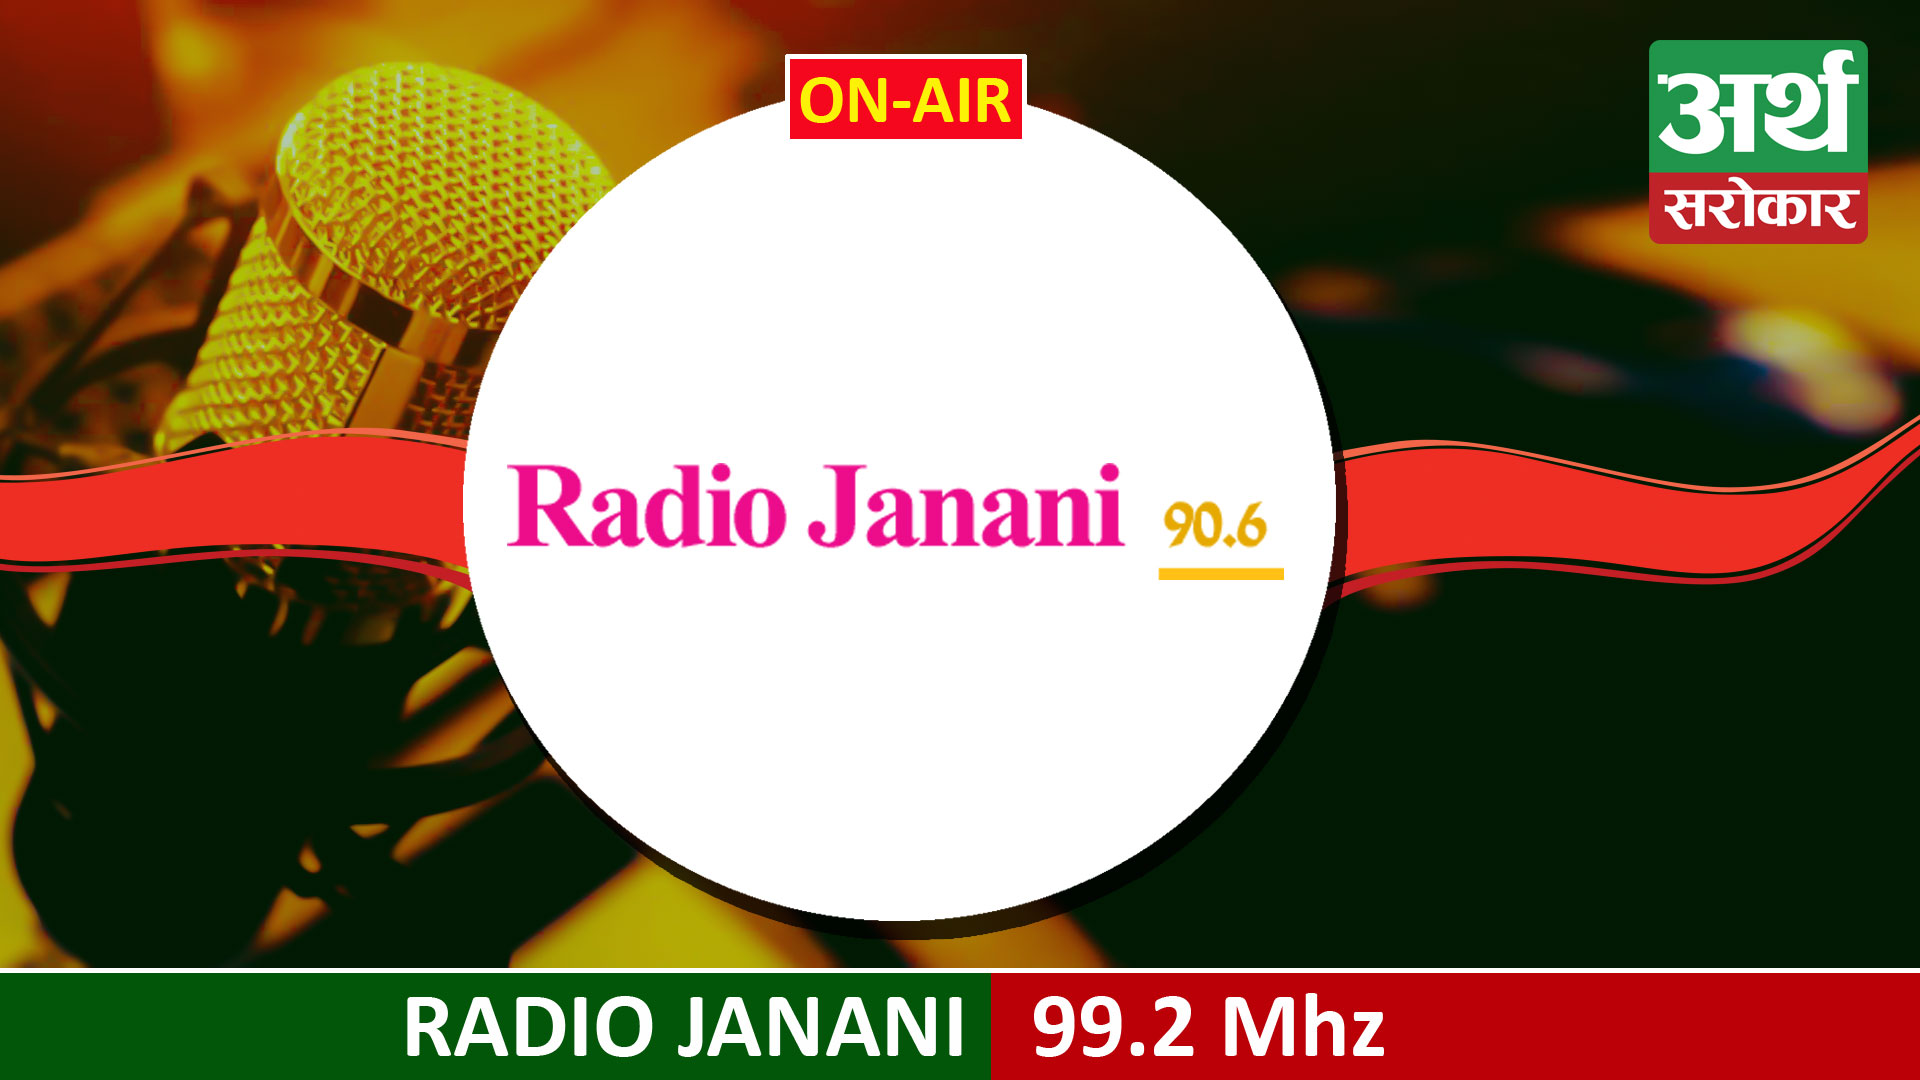 Radio Janani 90.6 MHz